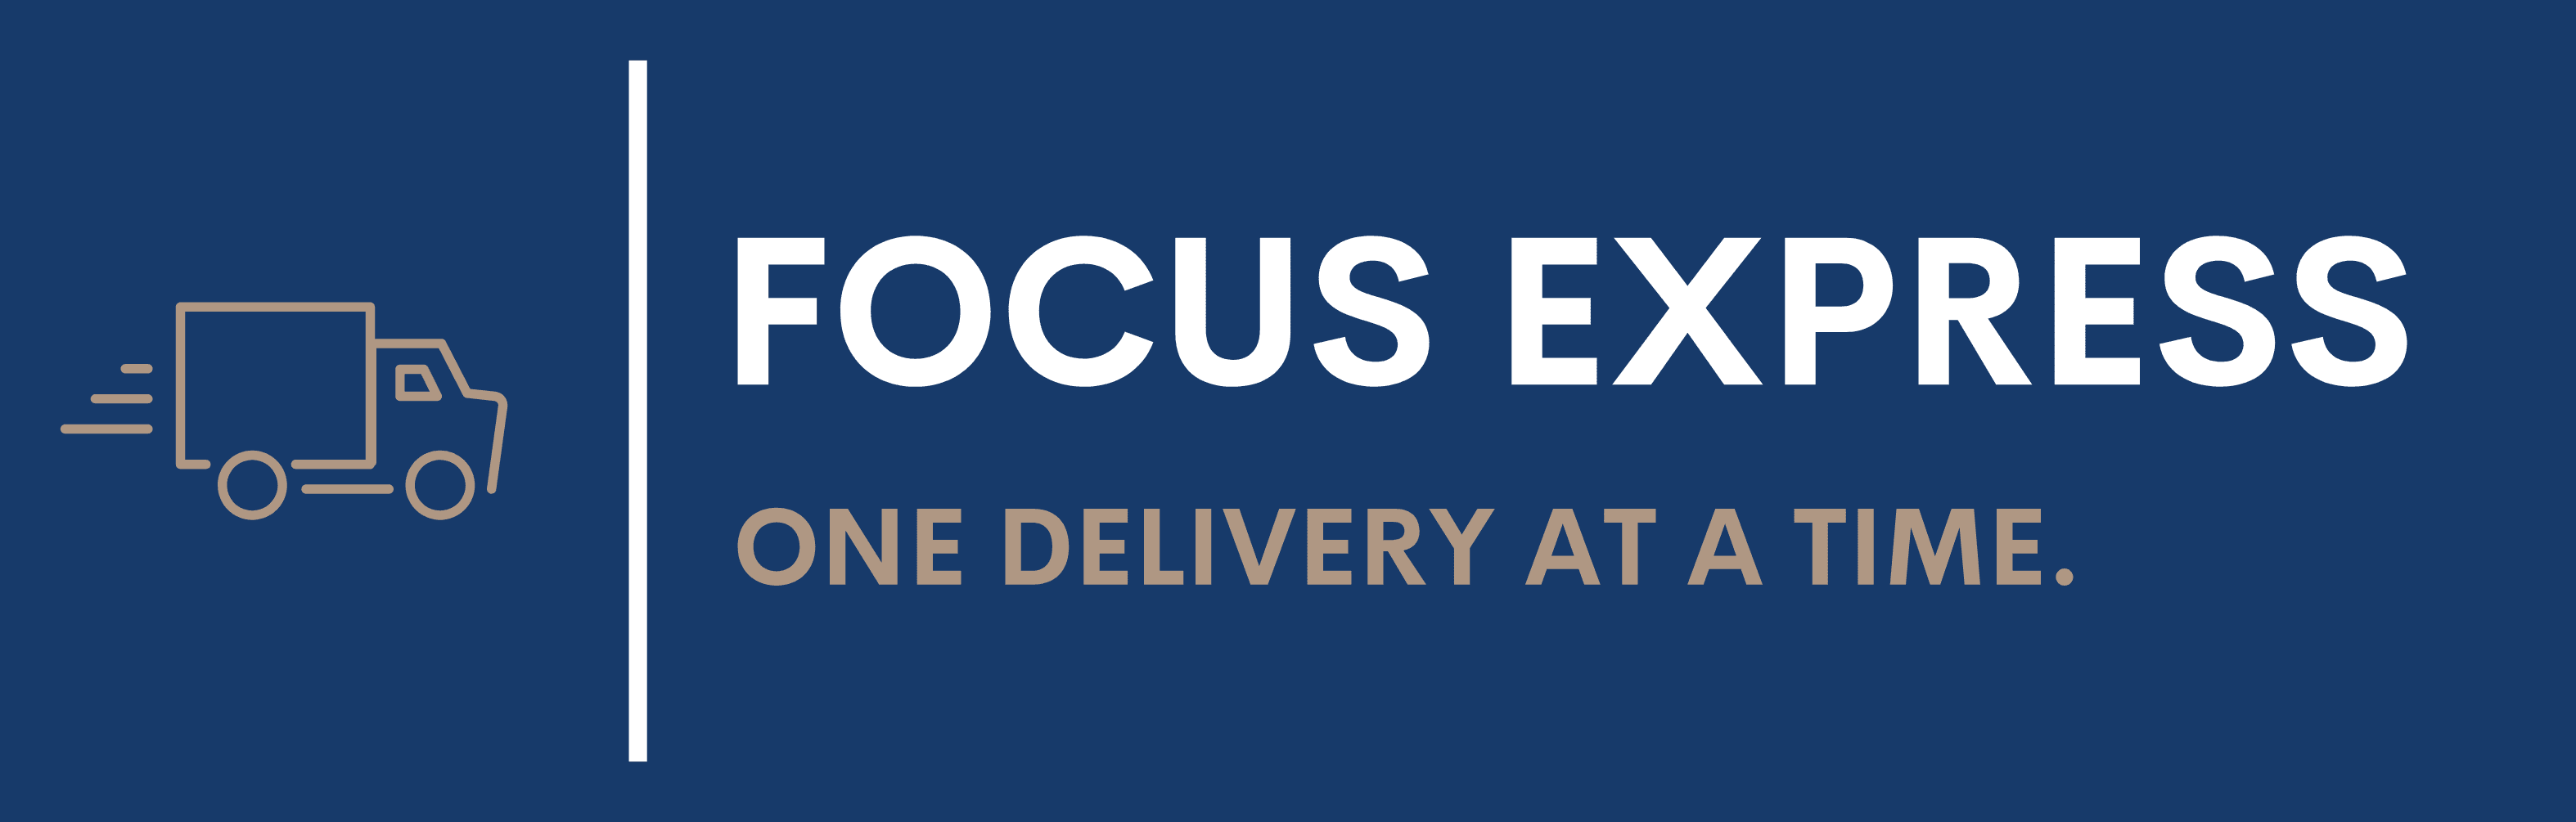 Focus Express